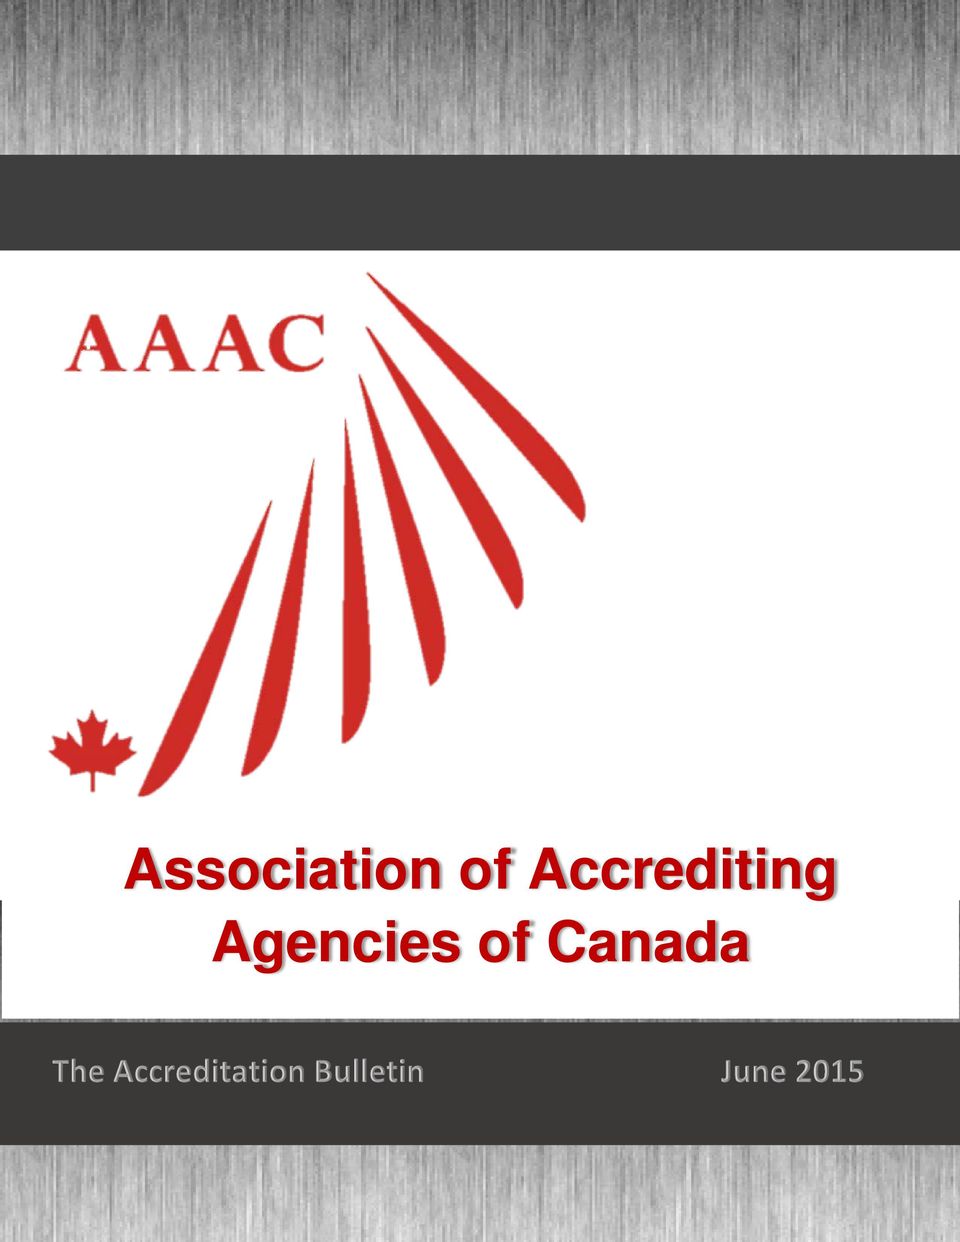 Agencies of Canada